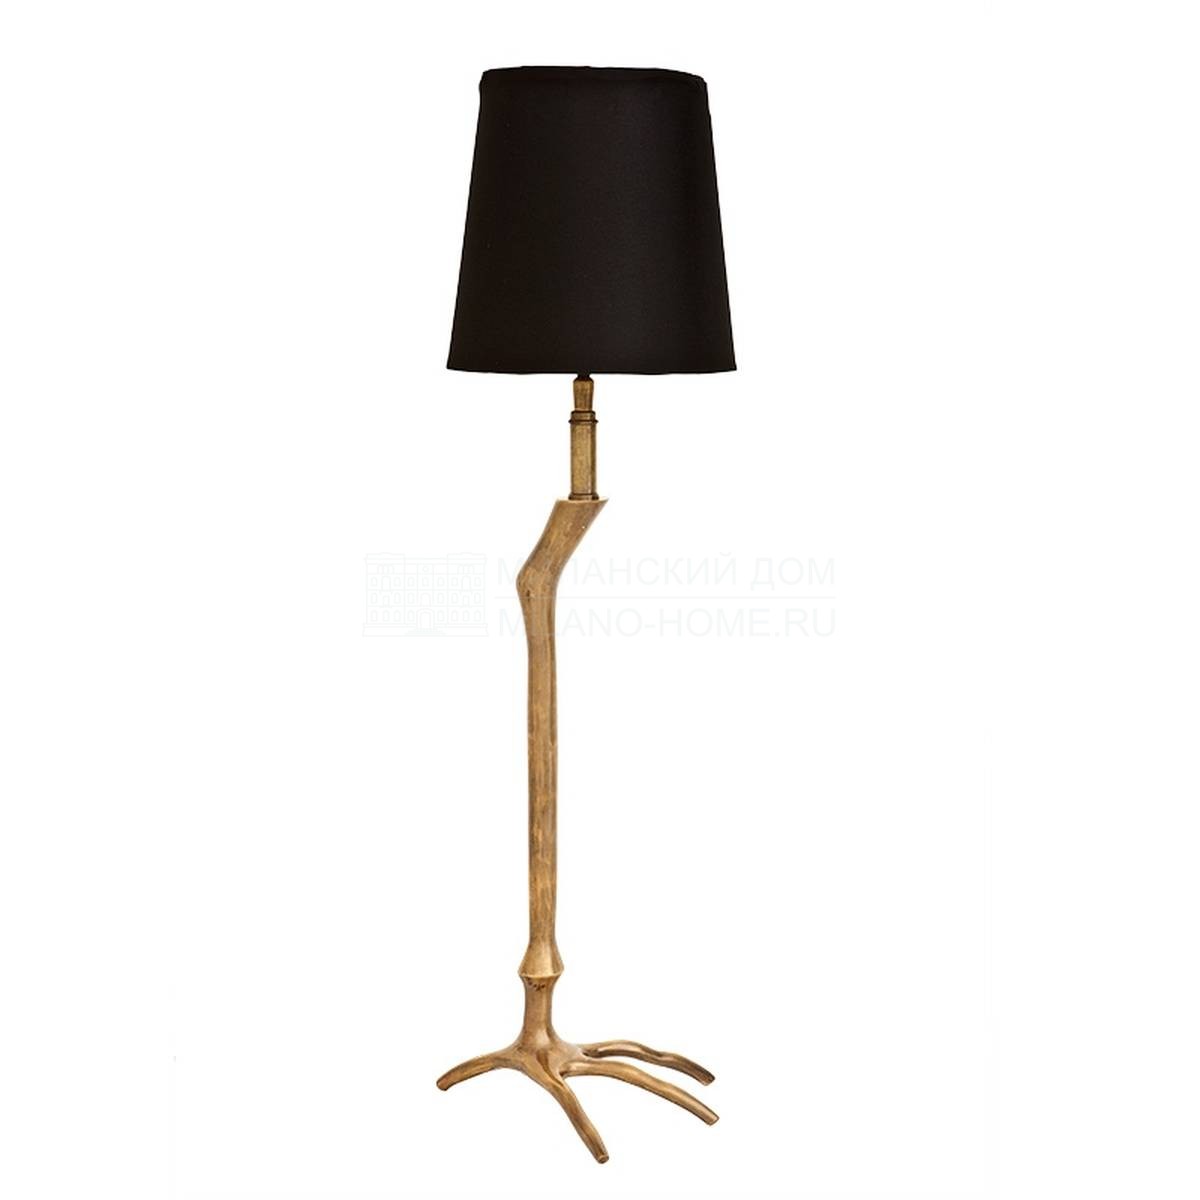 Настольная лампа Cloisonné из Голландии фабрики EICHHOLTZ